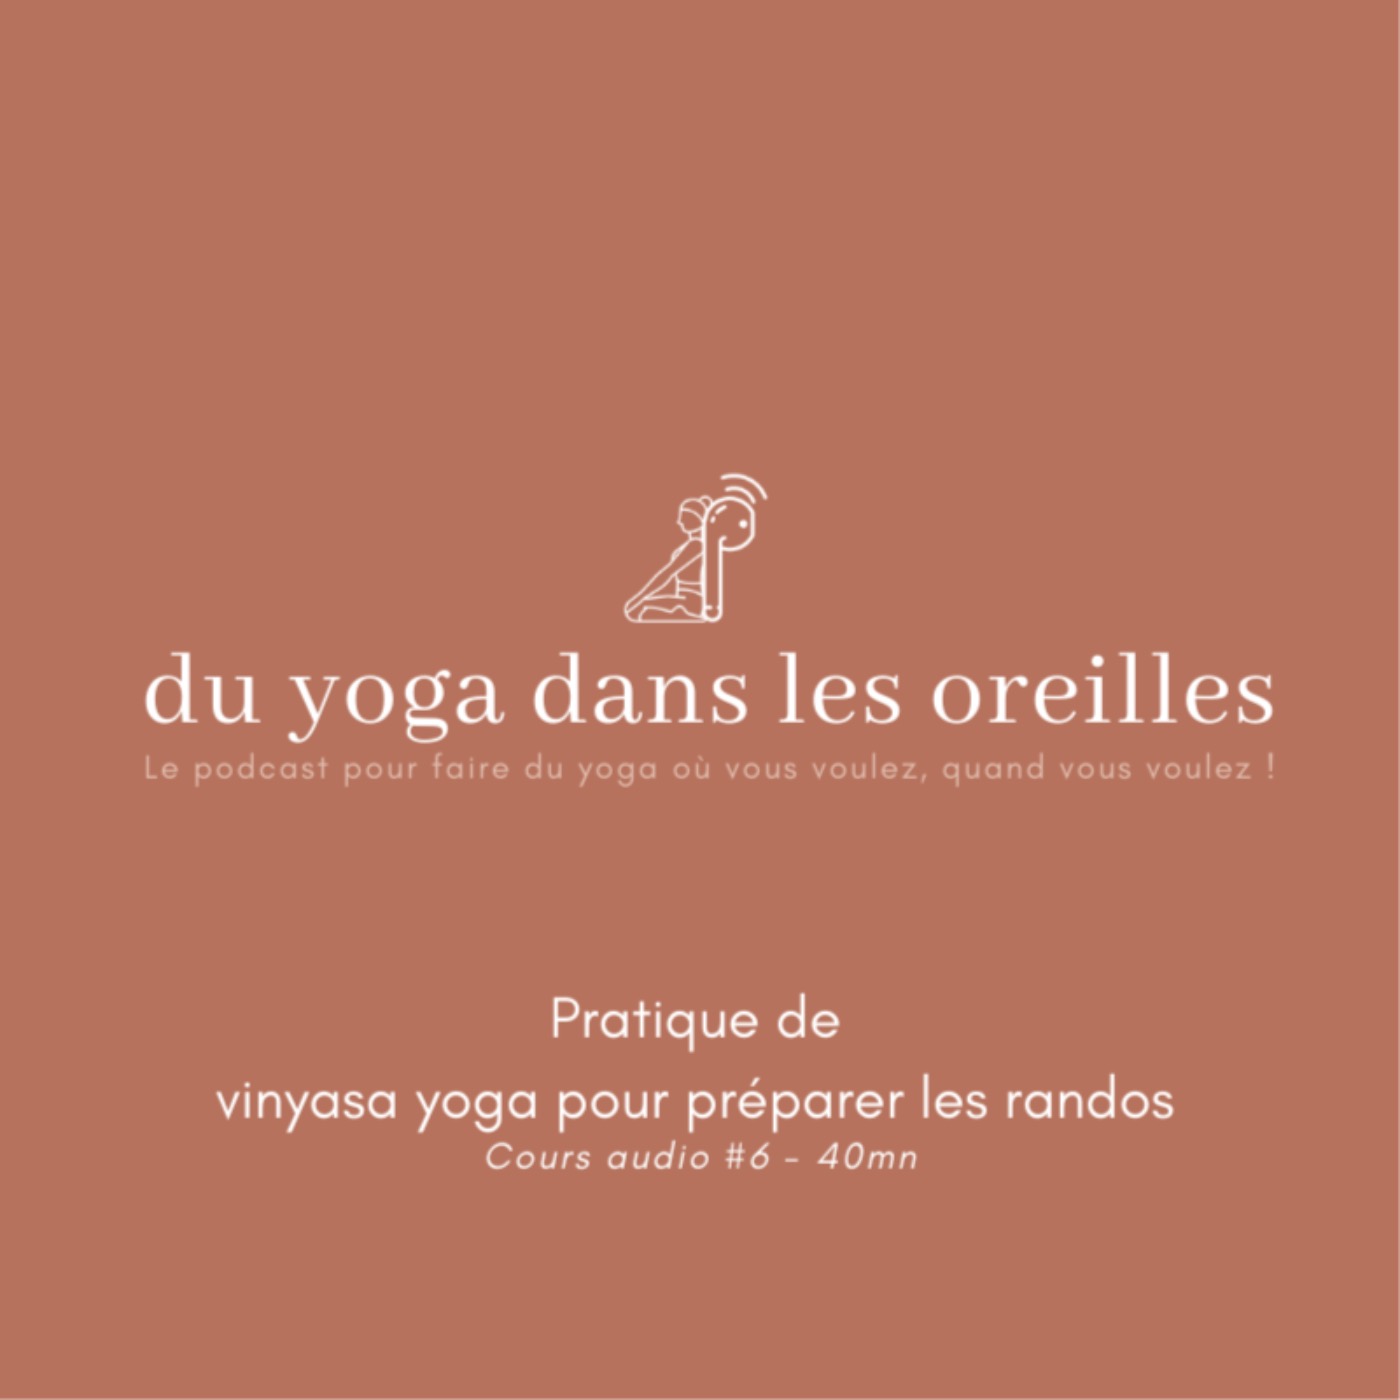 Cours de yoga vinyasa pour préparer les randos !